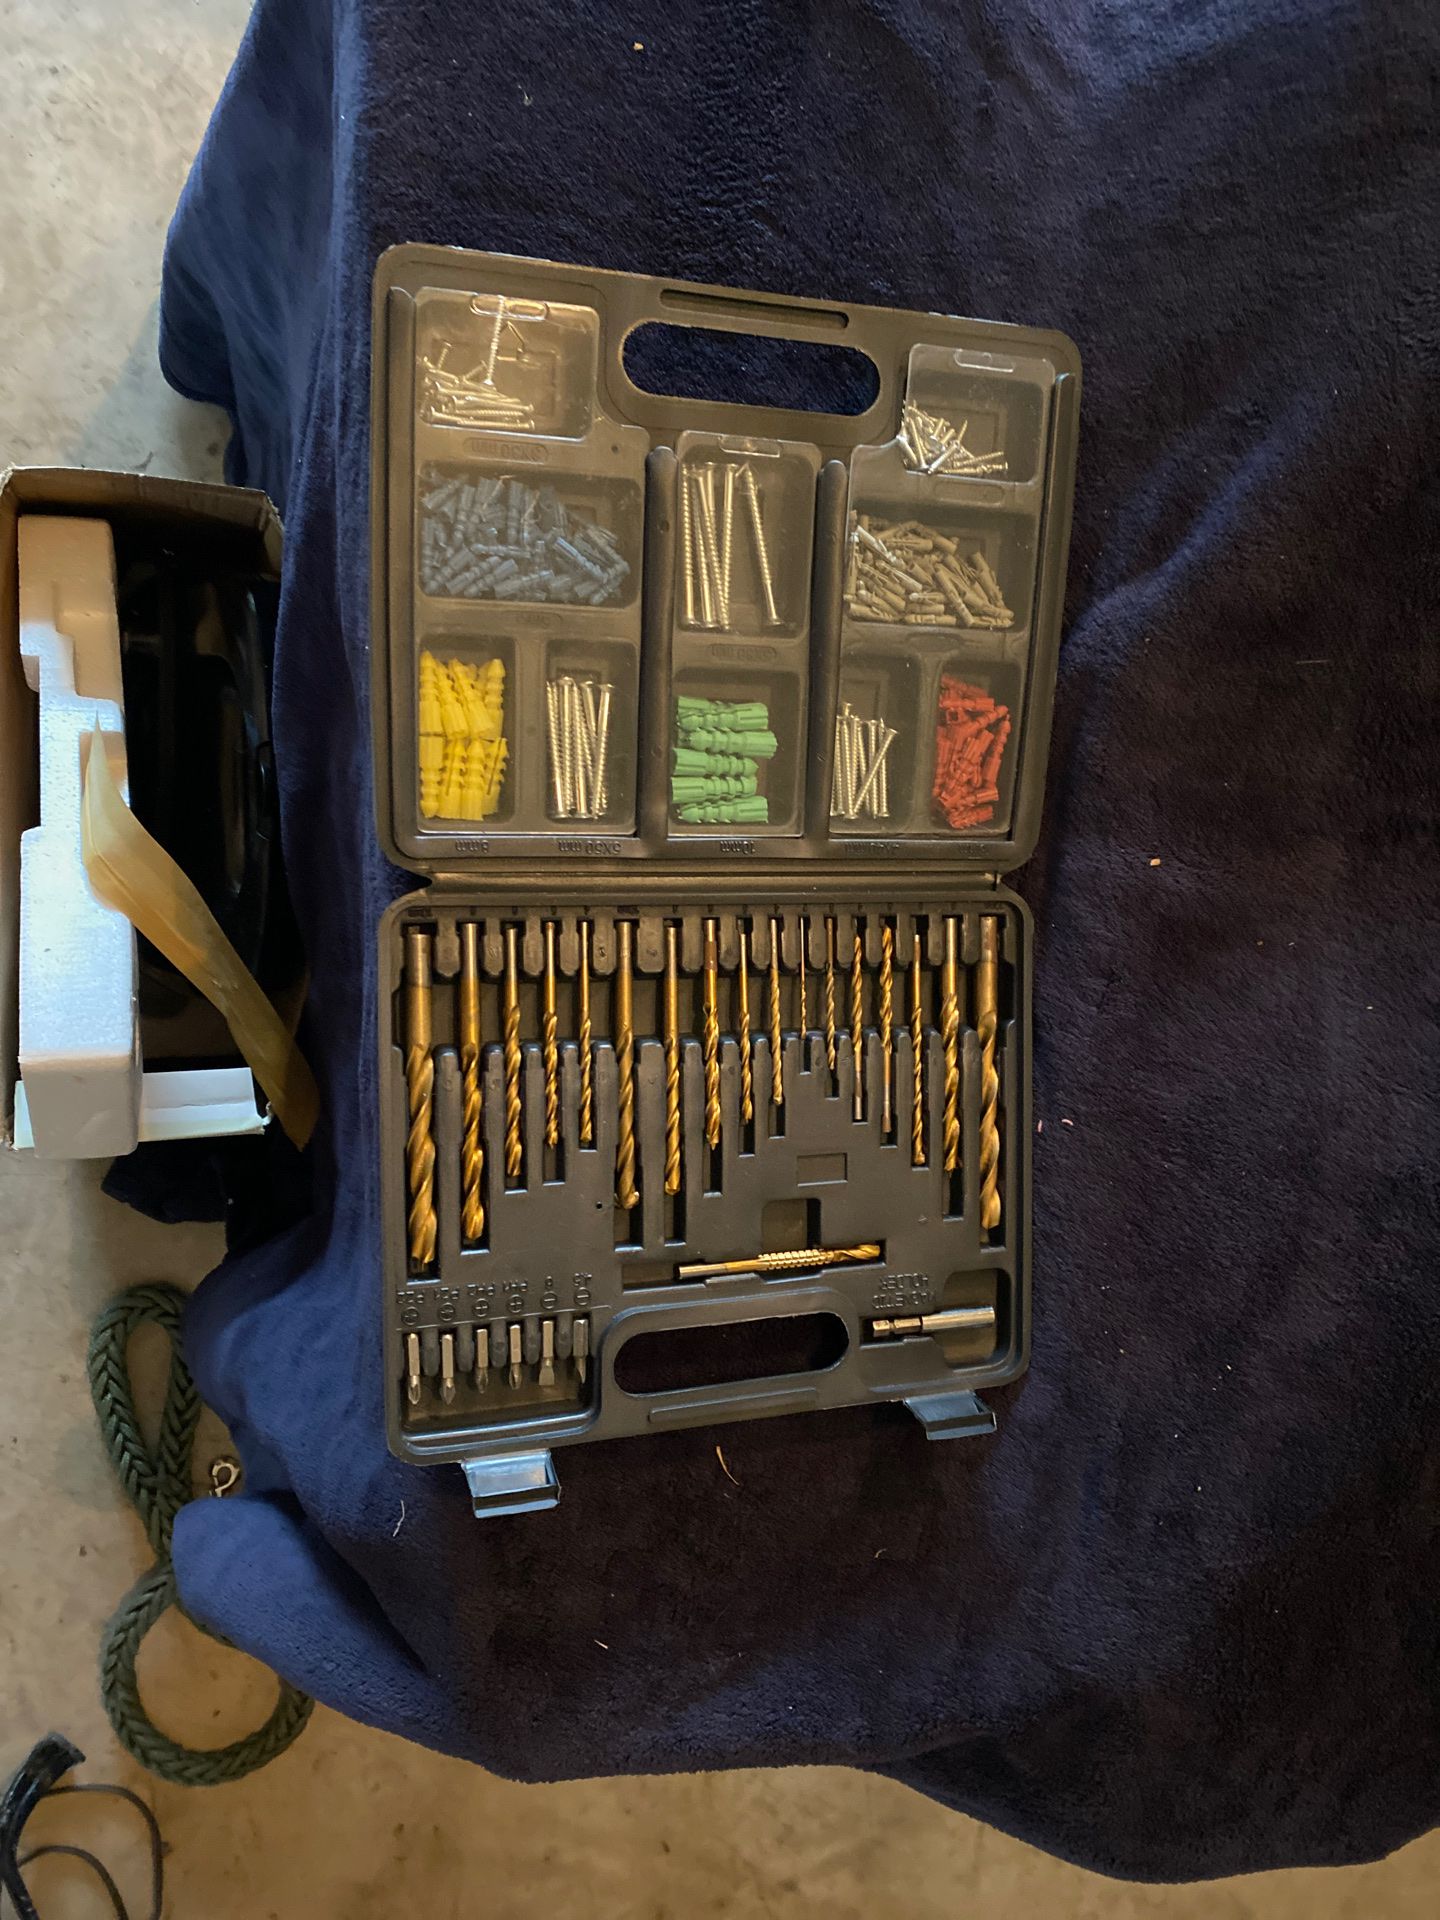 Drill kit